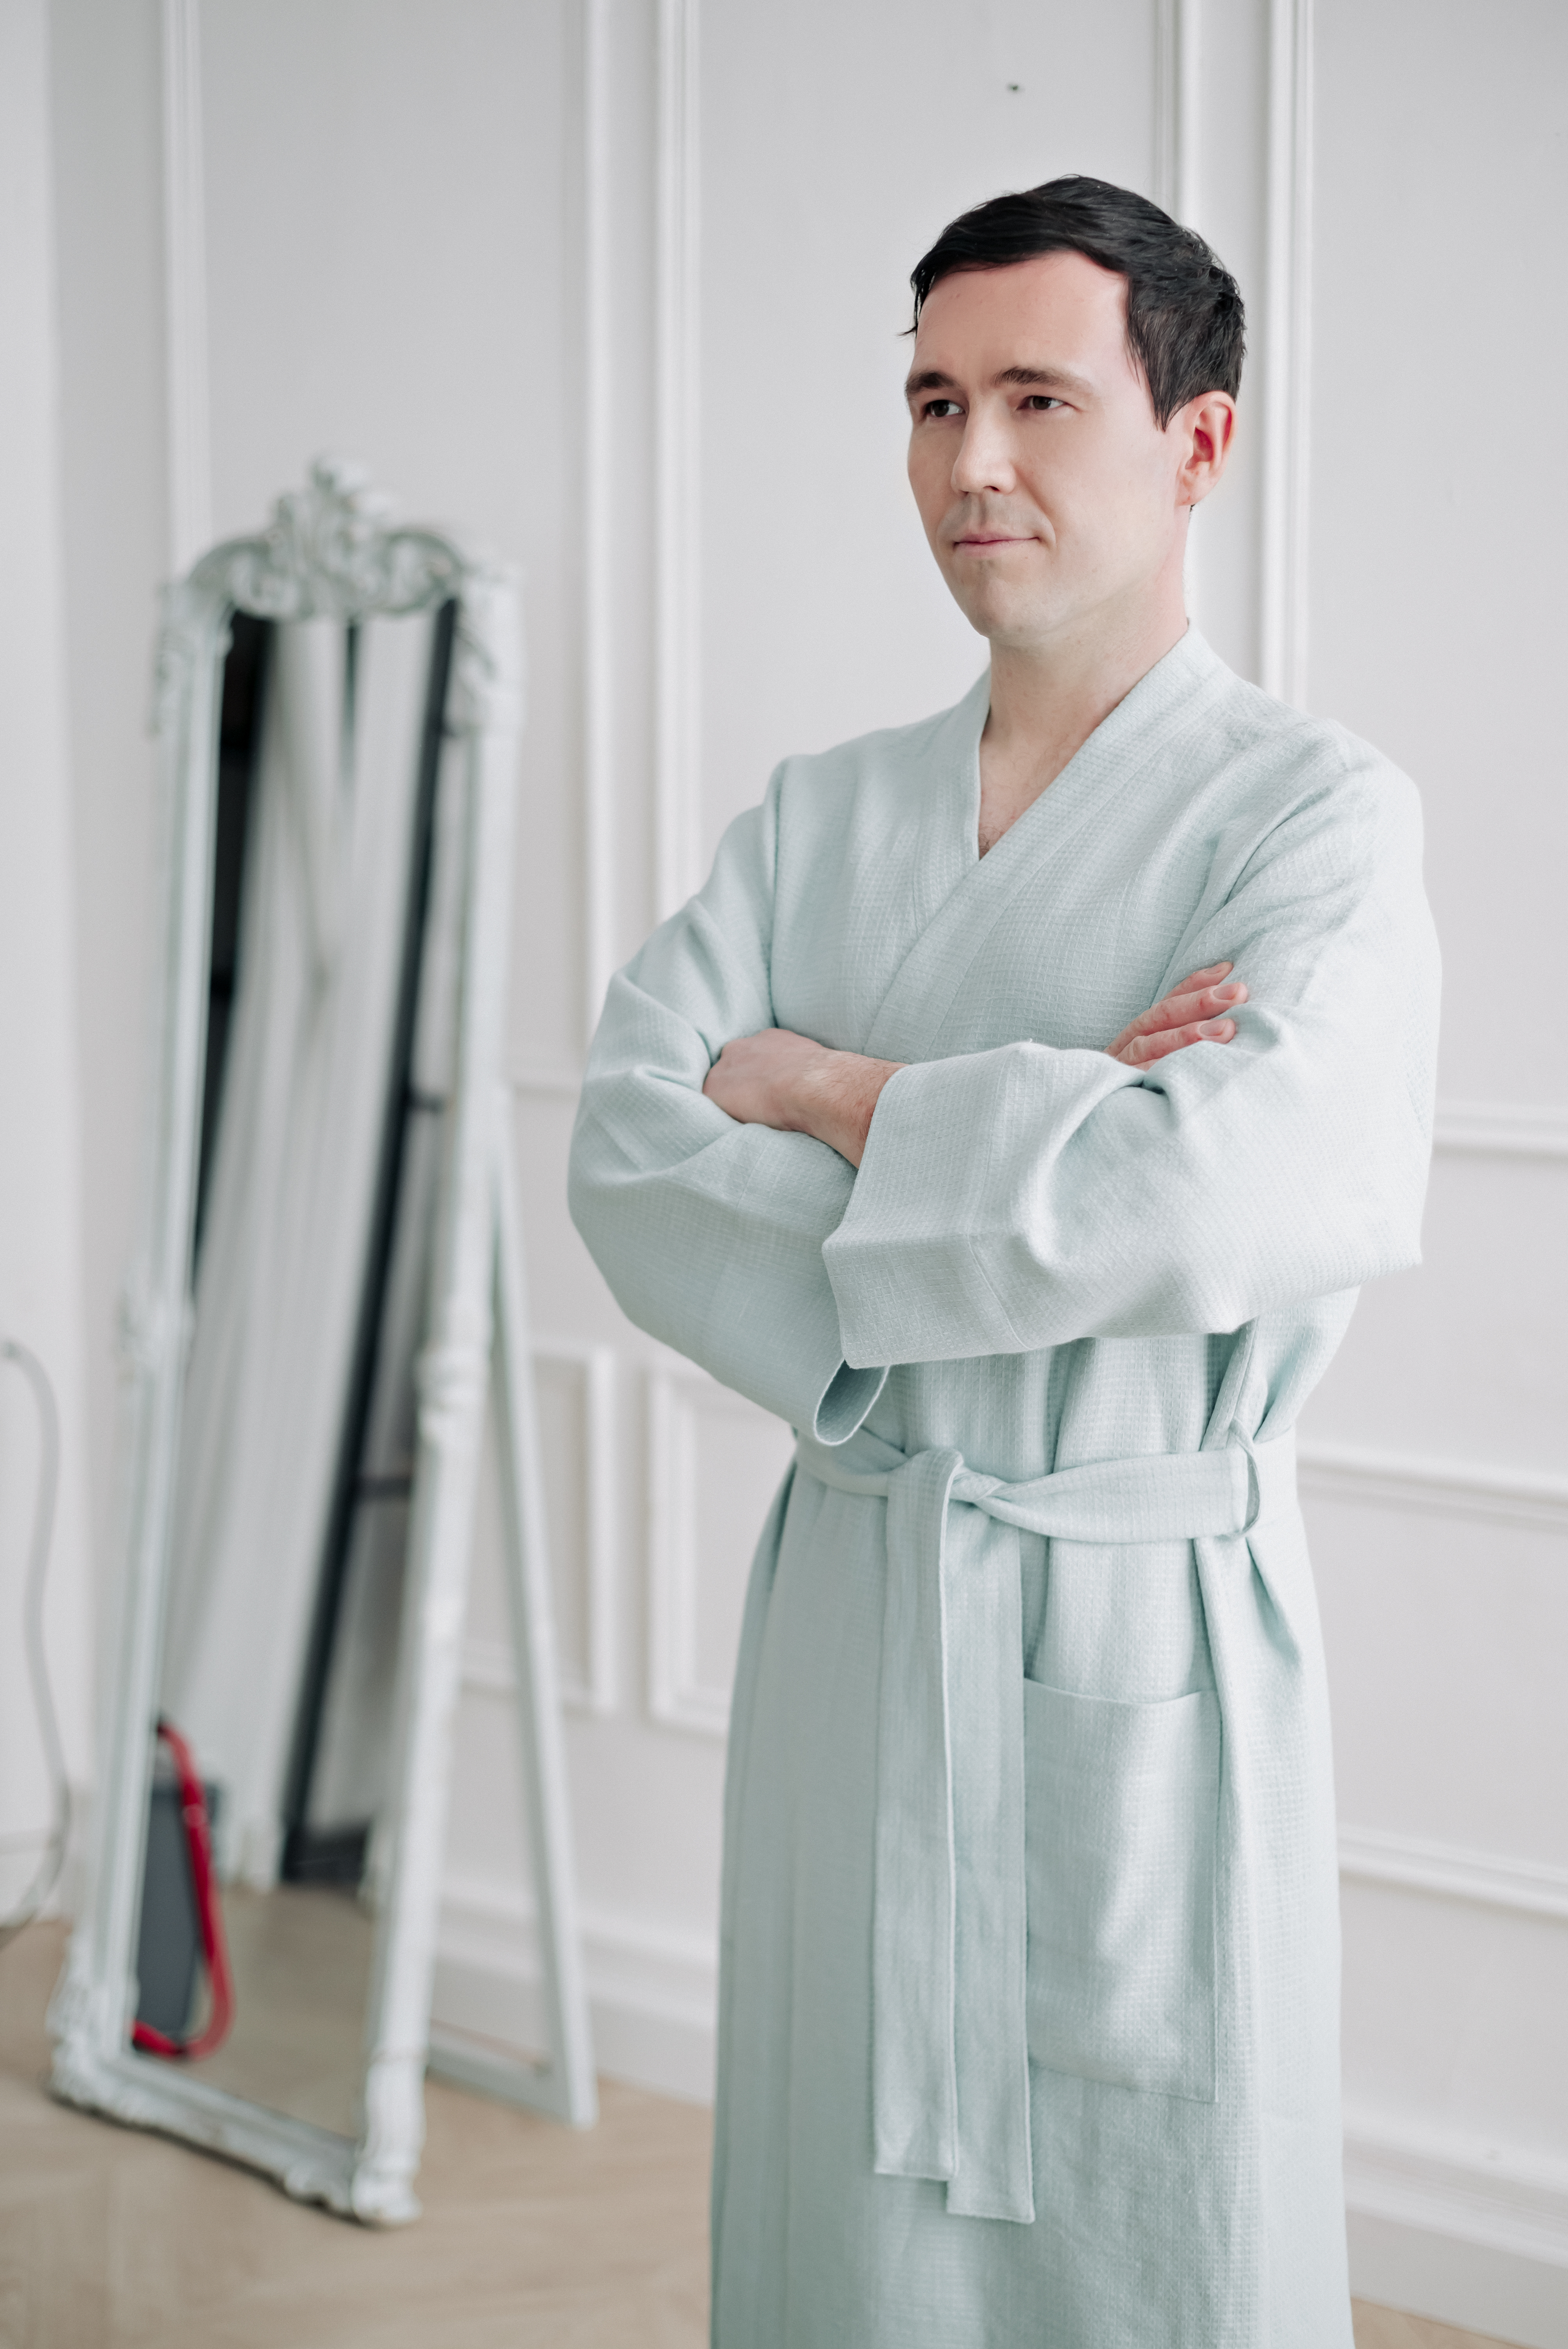 Халат-кимоно изо льна мужской в магазине «Aleksiya_dress» на Ламбада-маркете